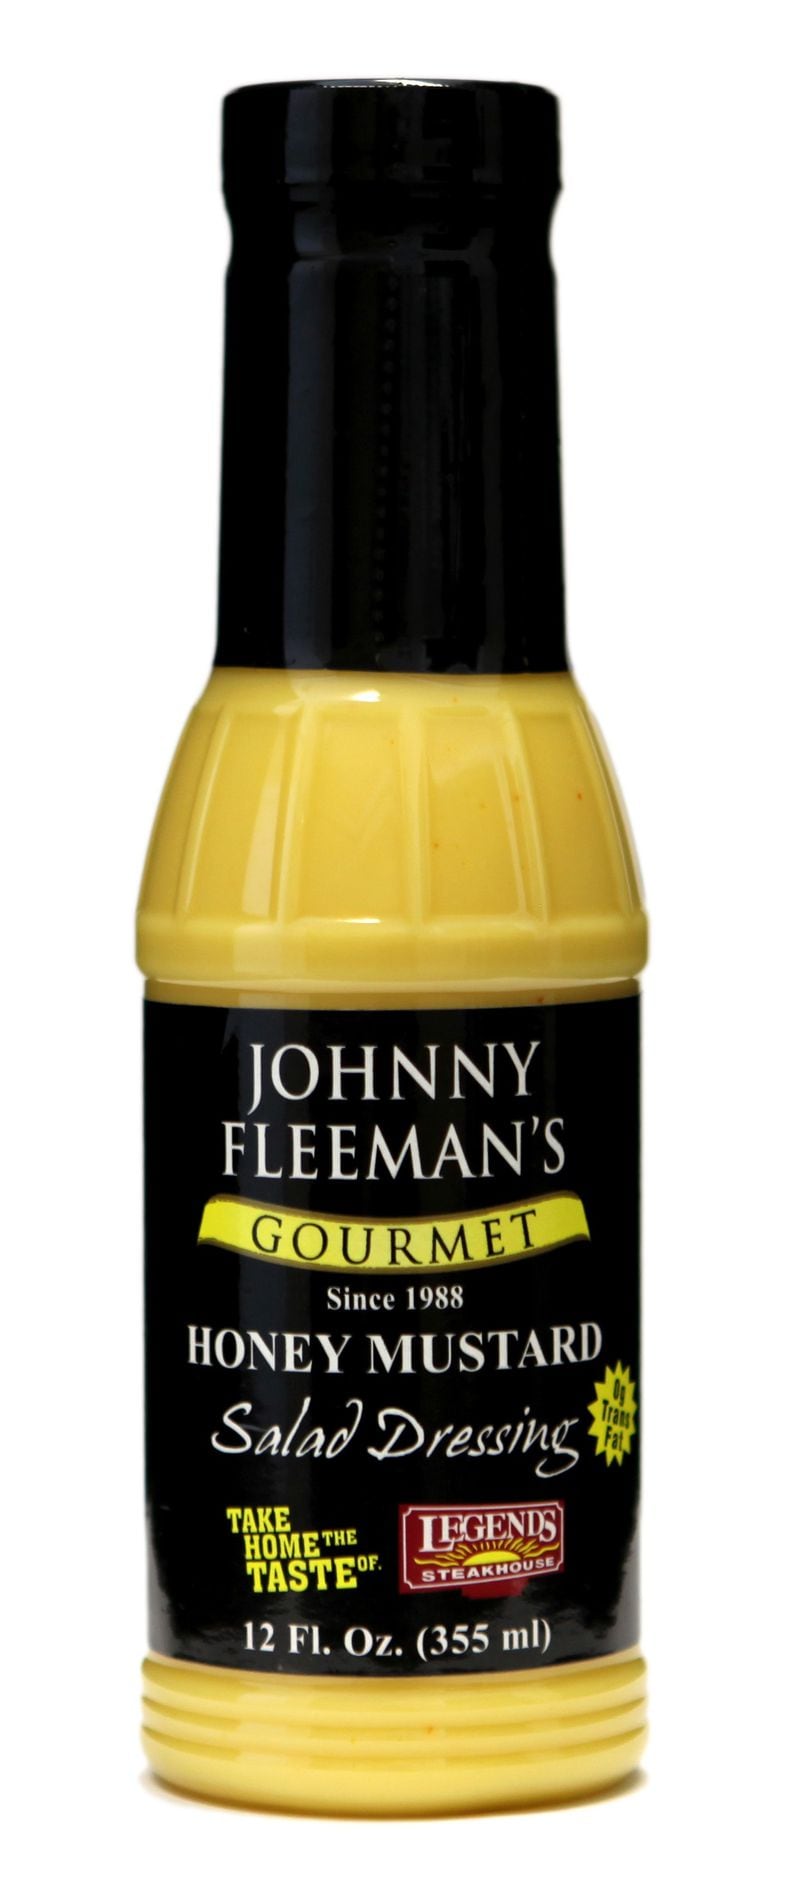 Honey Mustard Salad Dressing from Johnny Fleeman’s Gourmet